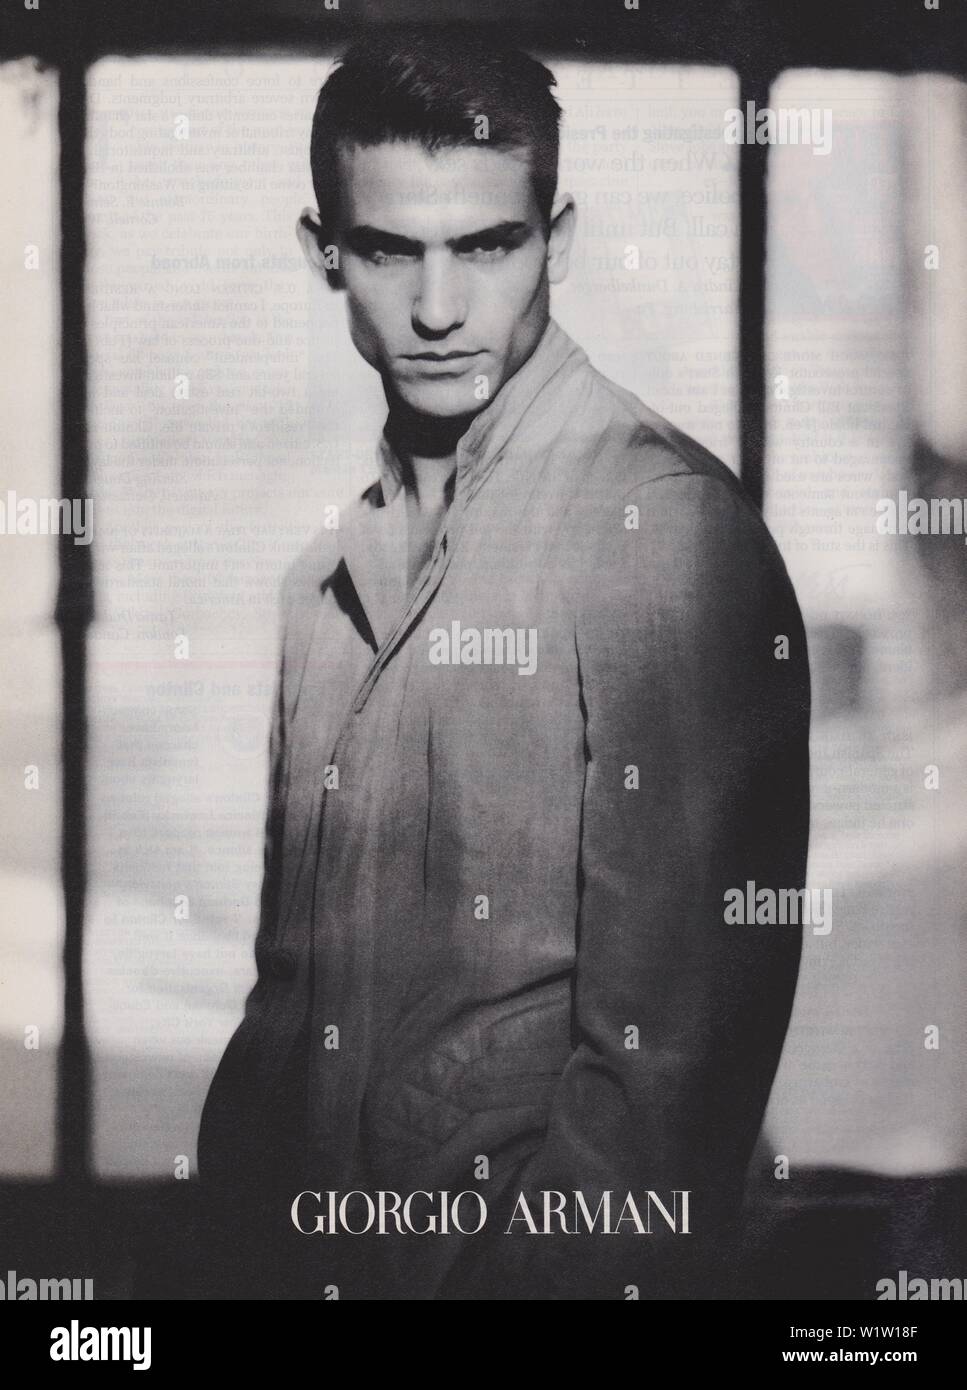 poster advertising Giorgio Armani male model in paper magazine from 1998,  no slogan, advertisement, creative Giorgio Armani advert from 1990s, b&w  Stock Photo - Alamy